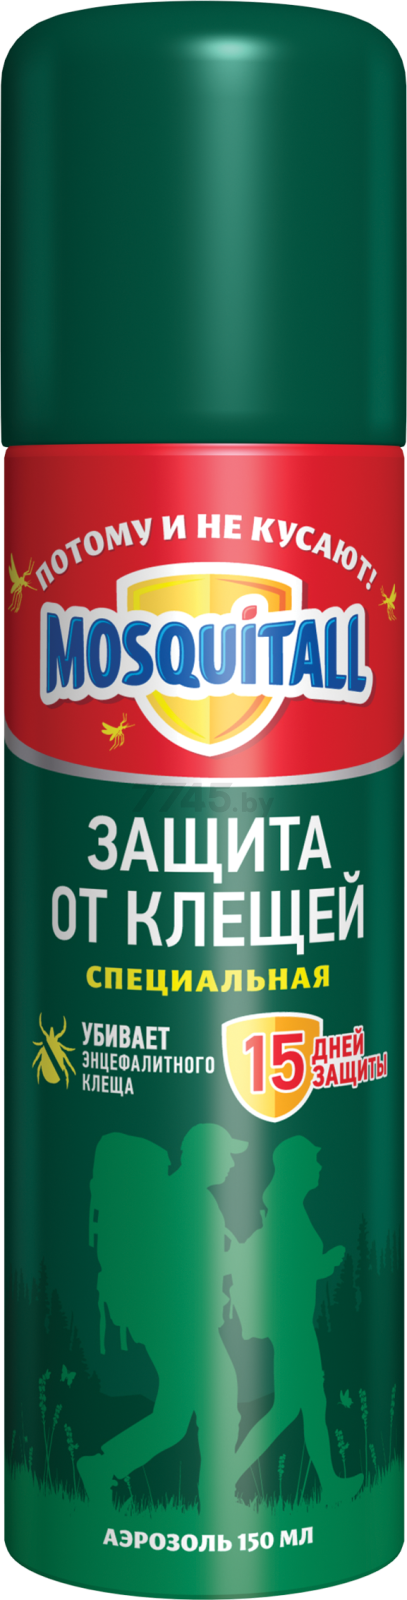 Средство репеллентное от насекомых MOSQUITALL Защита от клещей 150 мл (4600104033520)